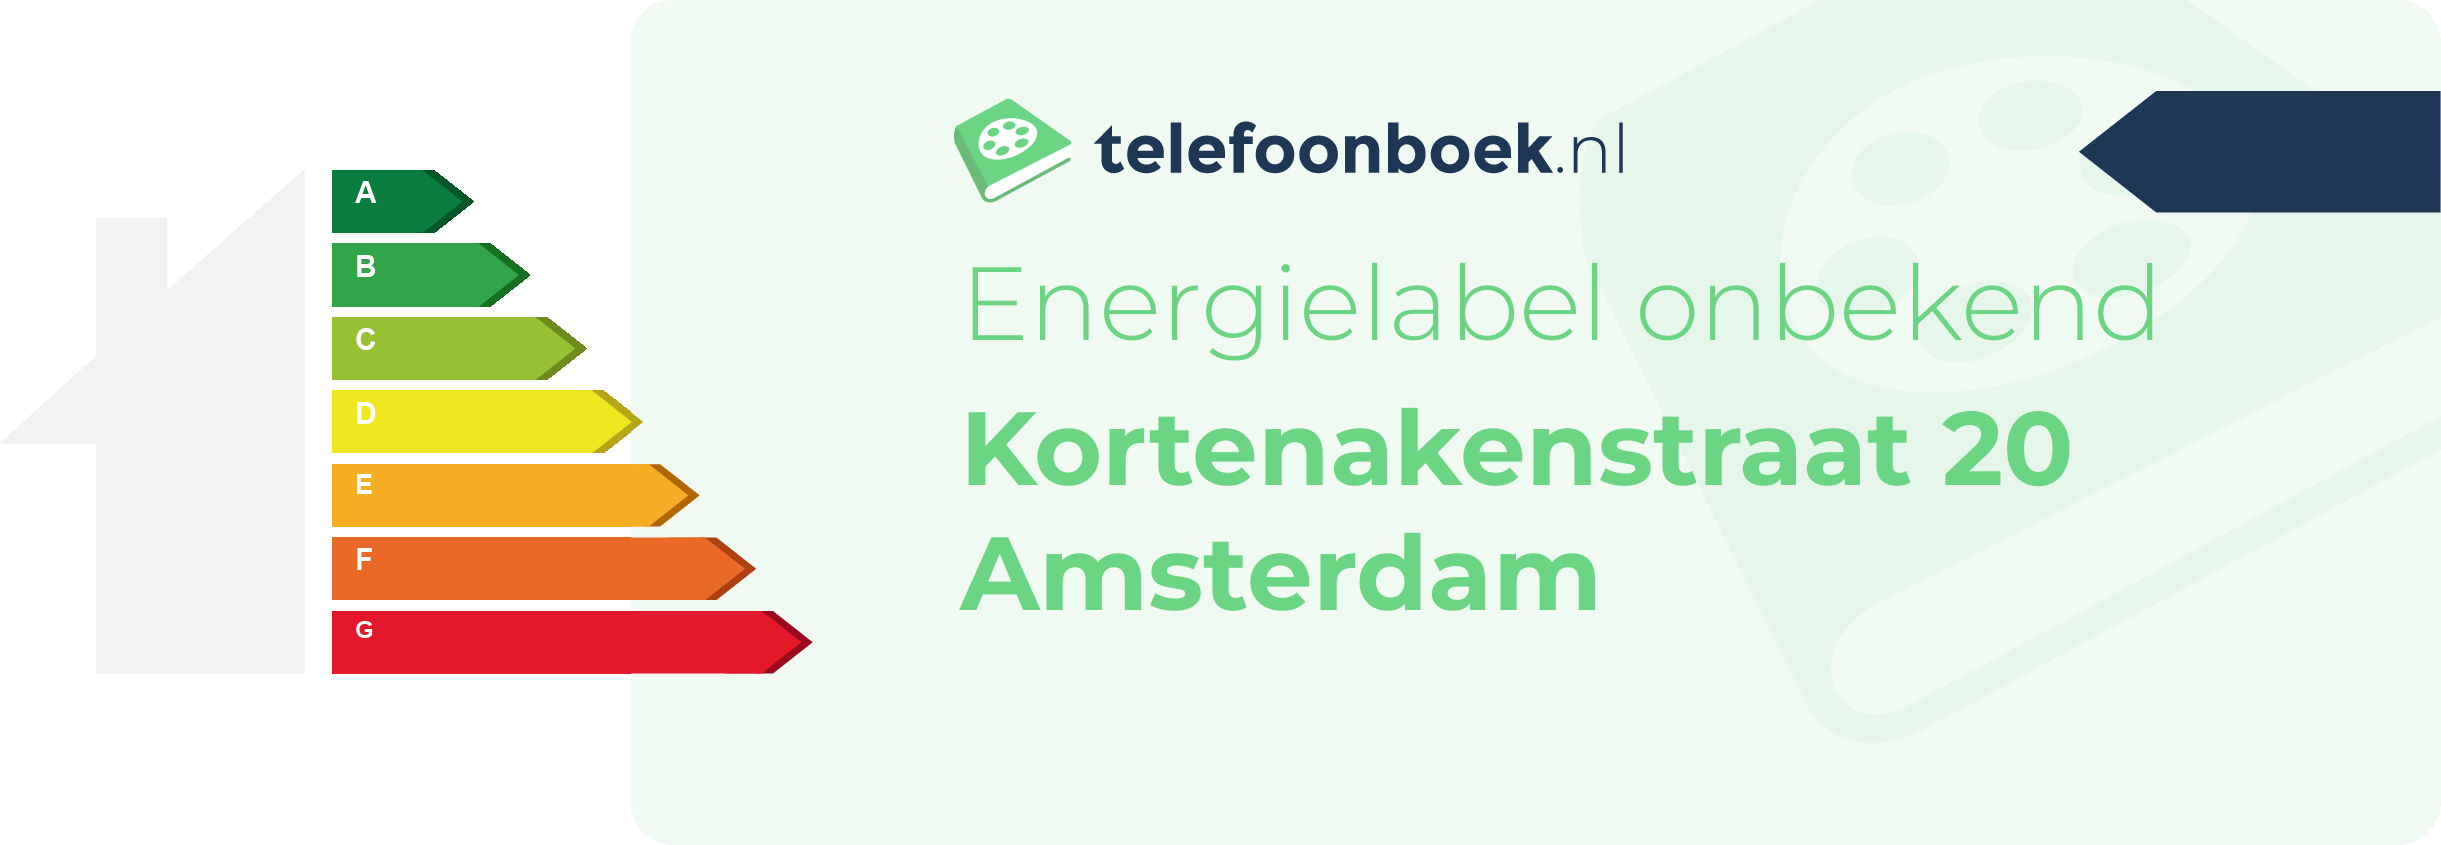 Energielabel Kortenakenstraat 20 Amsterdam